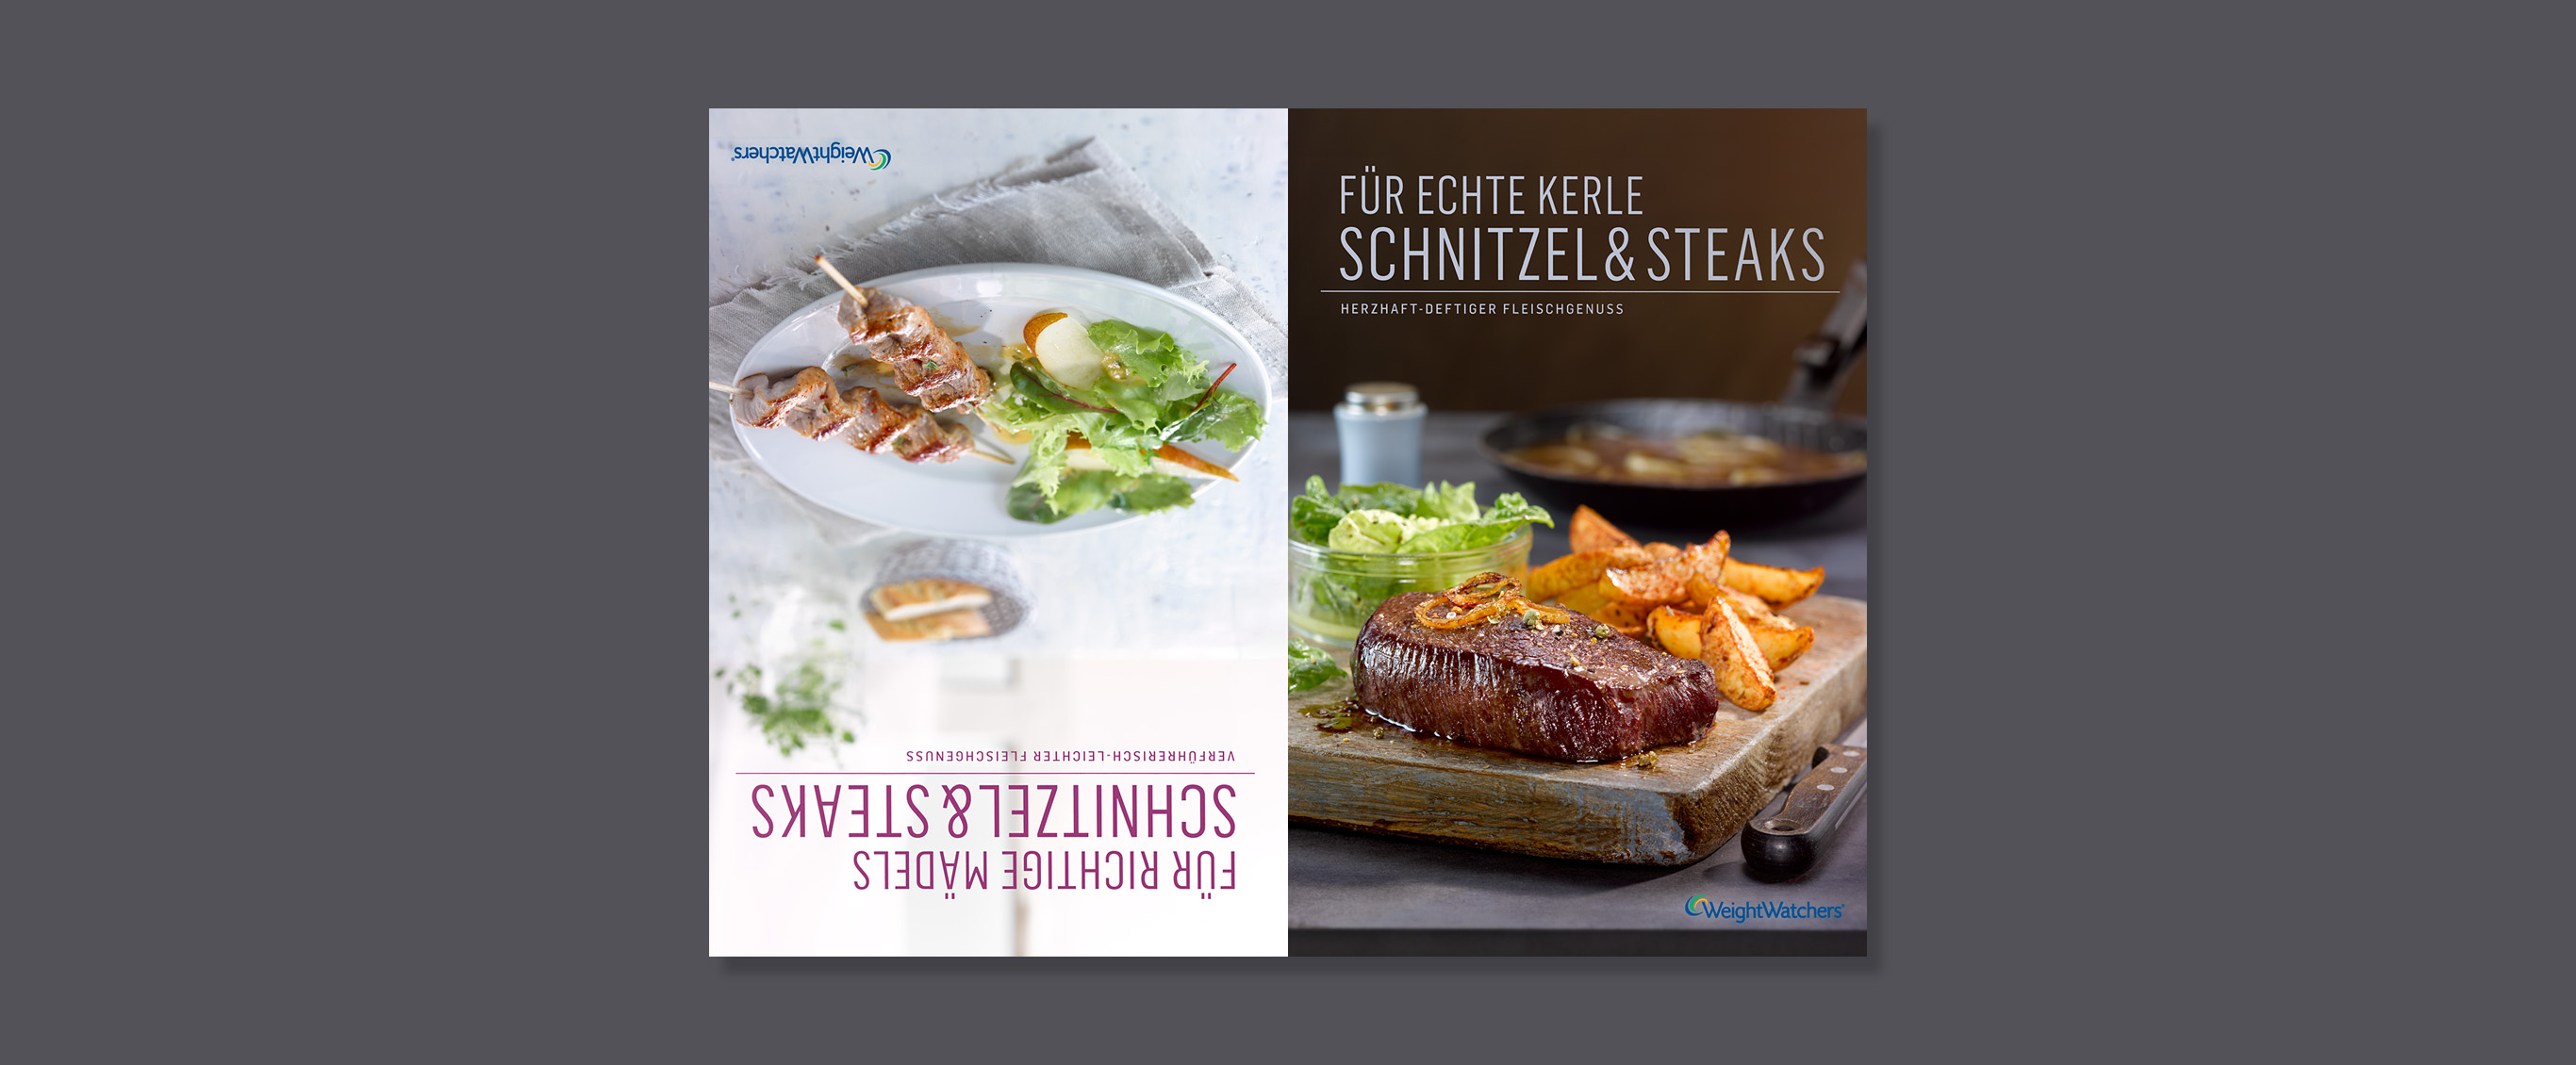 books - weight watchers - schnitzel & steaks - wendecover